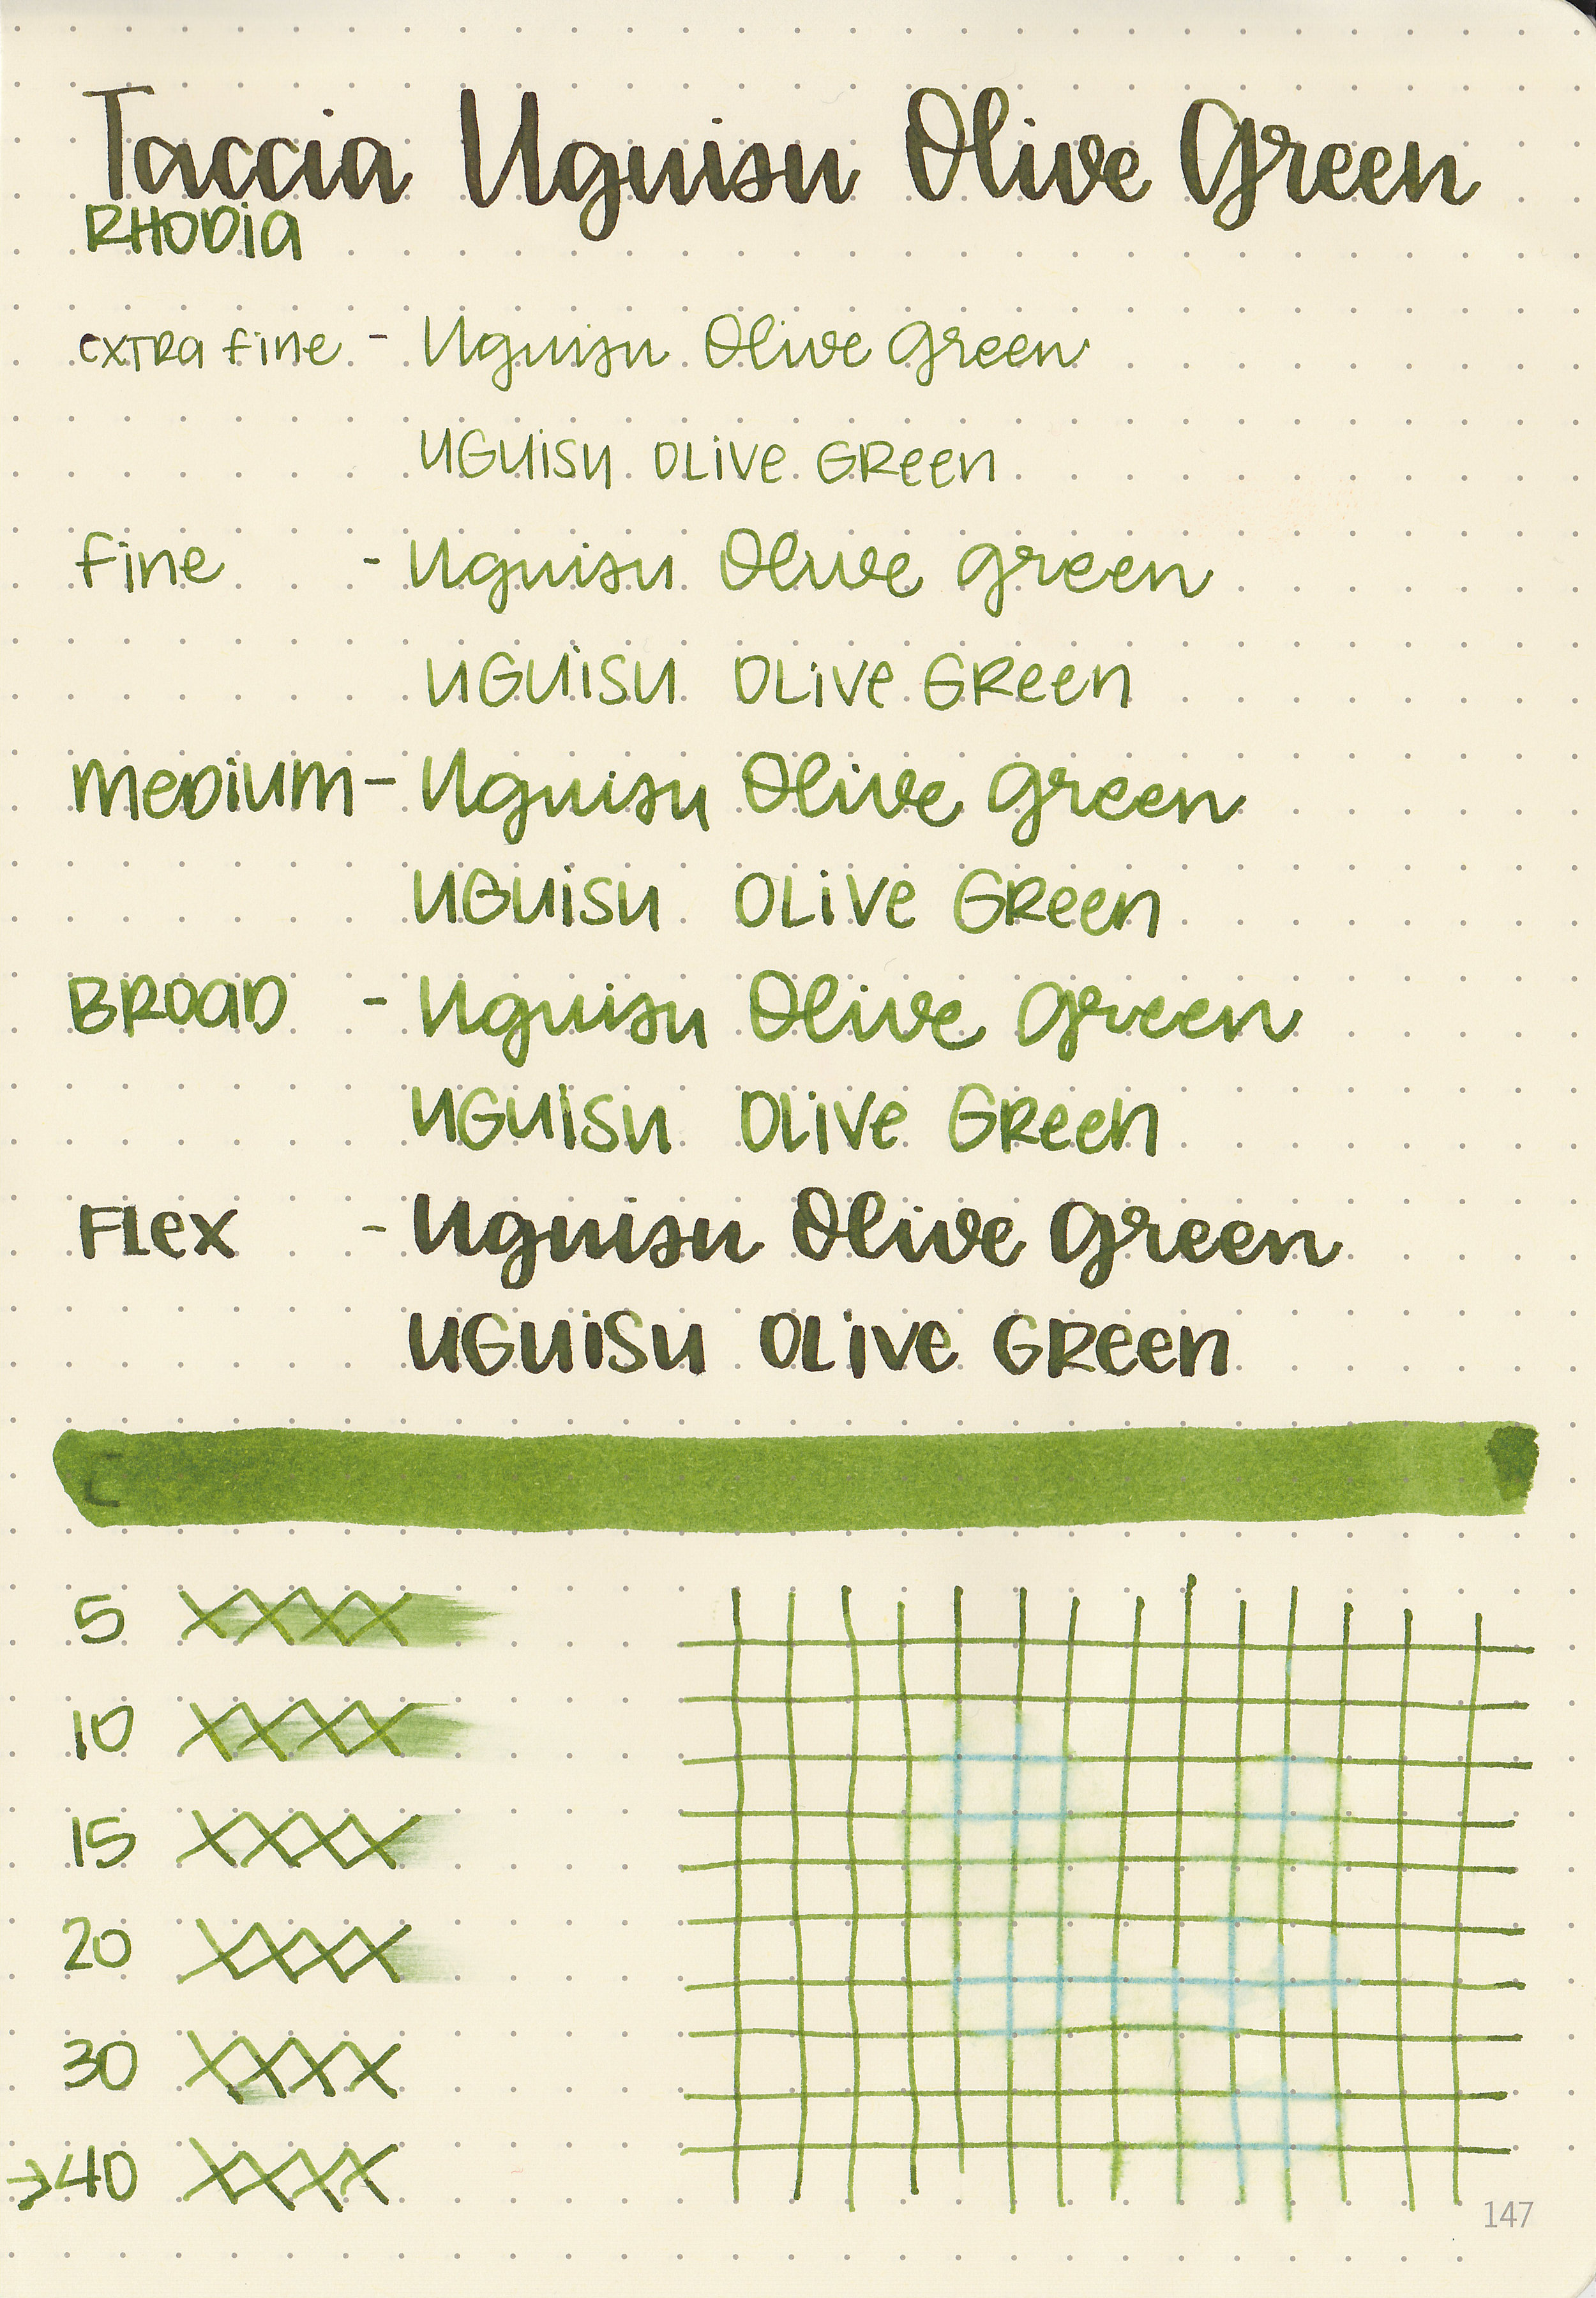 tac-uguisu-olive-green-5.jpg